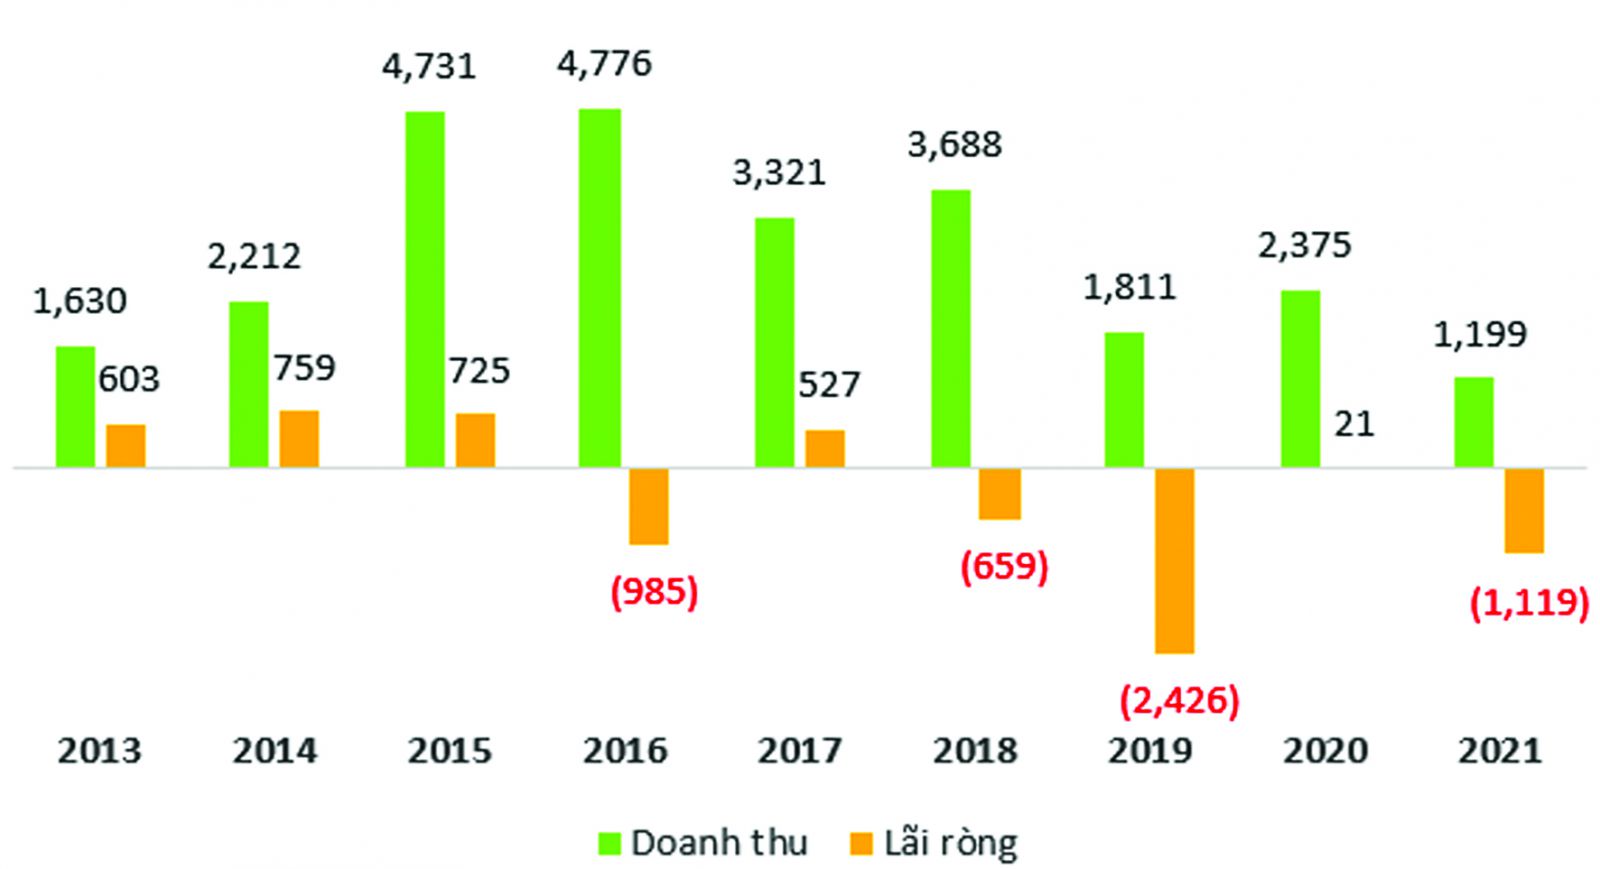  Kết quả kinh doanh của HNG giai đoạn 2013-2021.